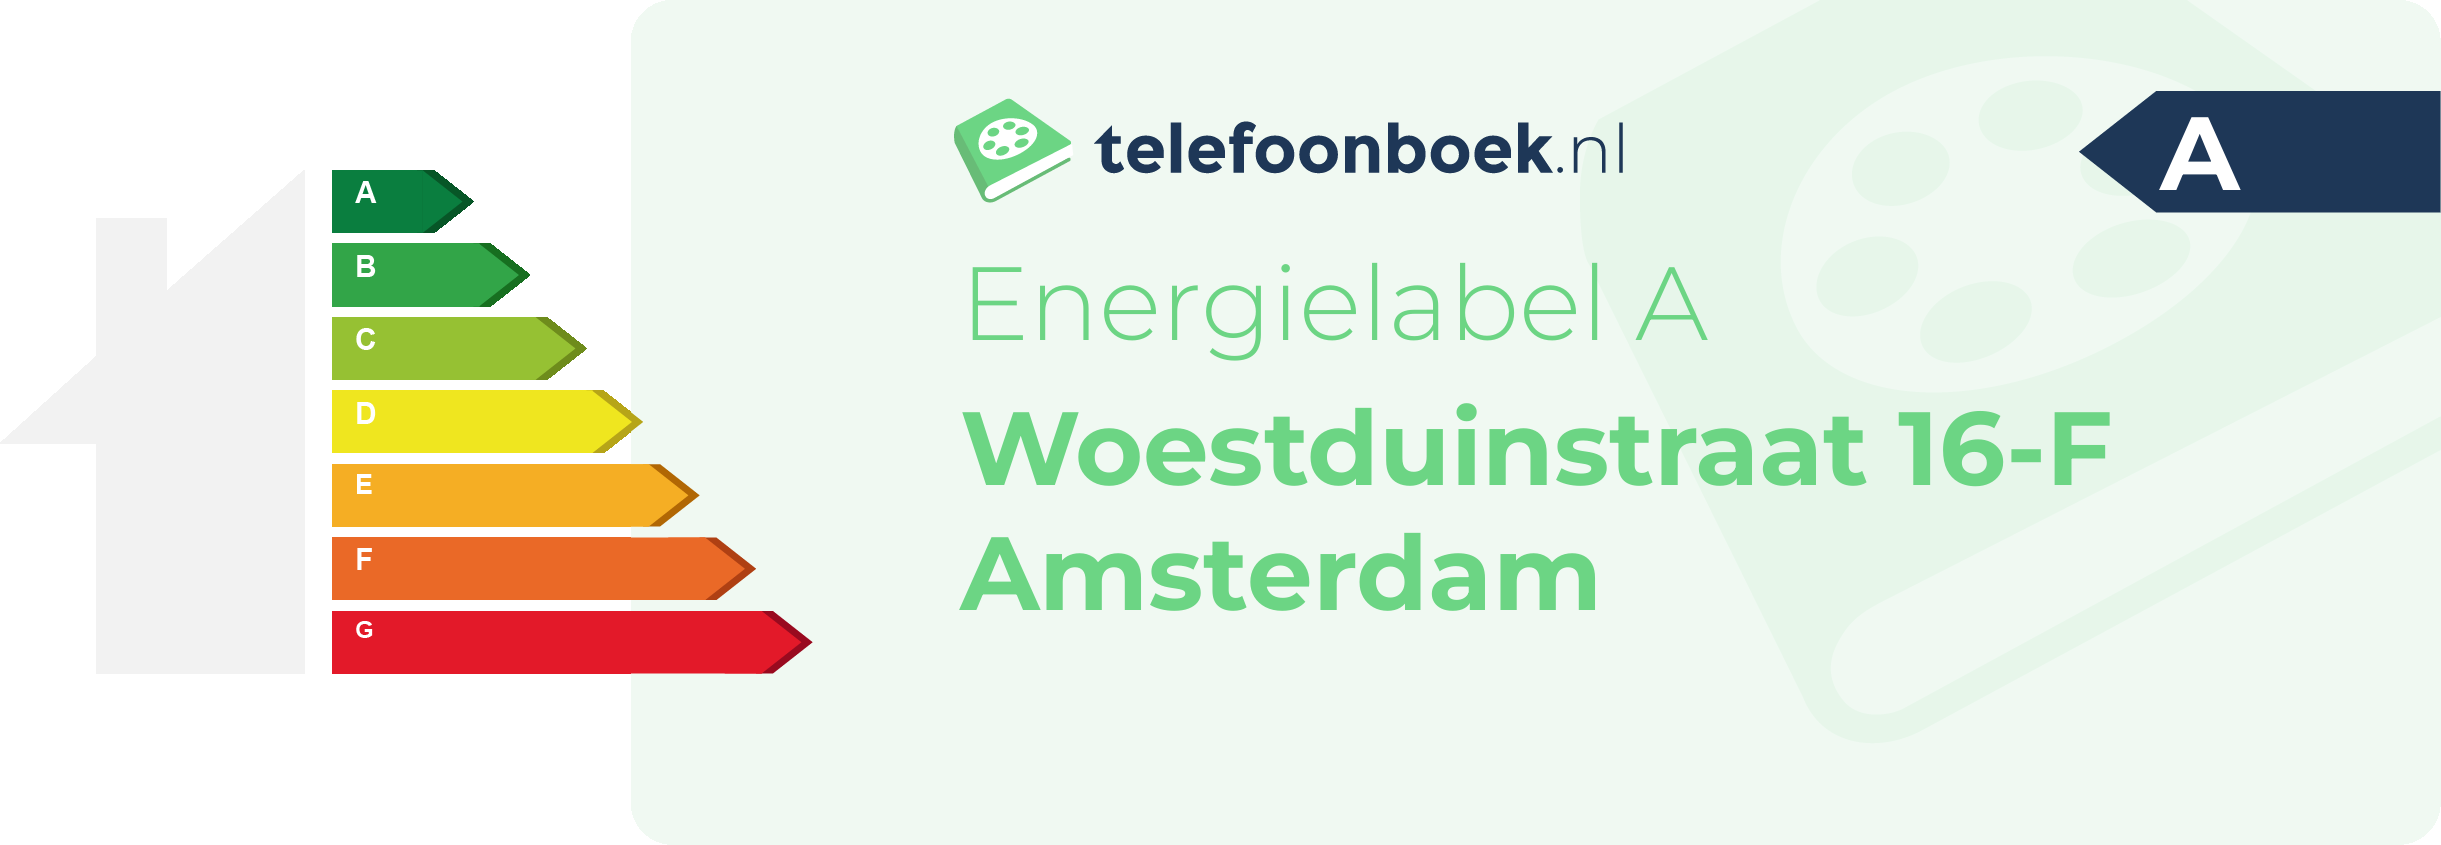 Energielabel Woestduinstraat 16-F Amsterdam